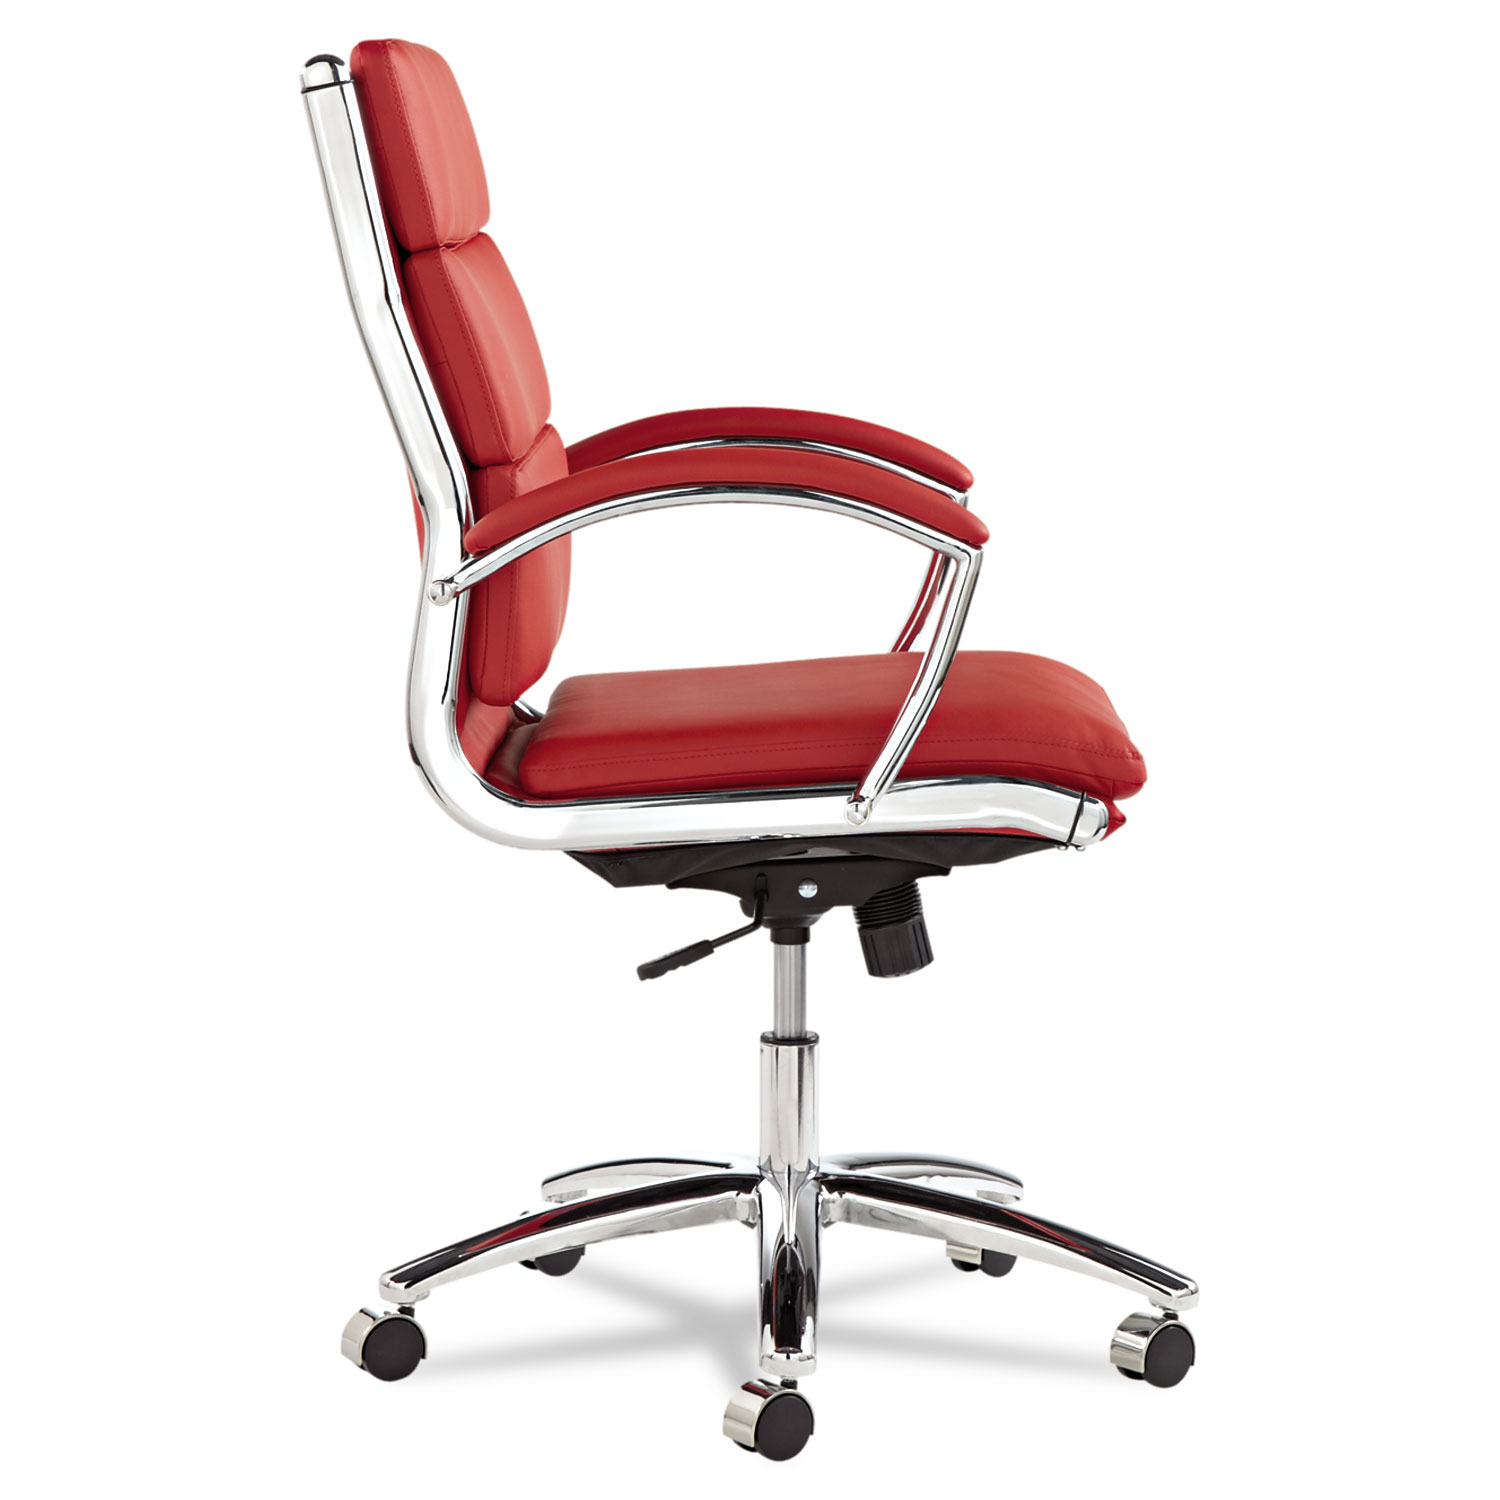 Alera Neratoli Series Mid-Back Swivel/Tilt Chair, Red Soft Leather, Chrome Frame